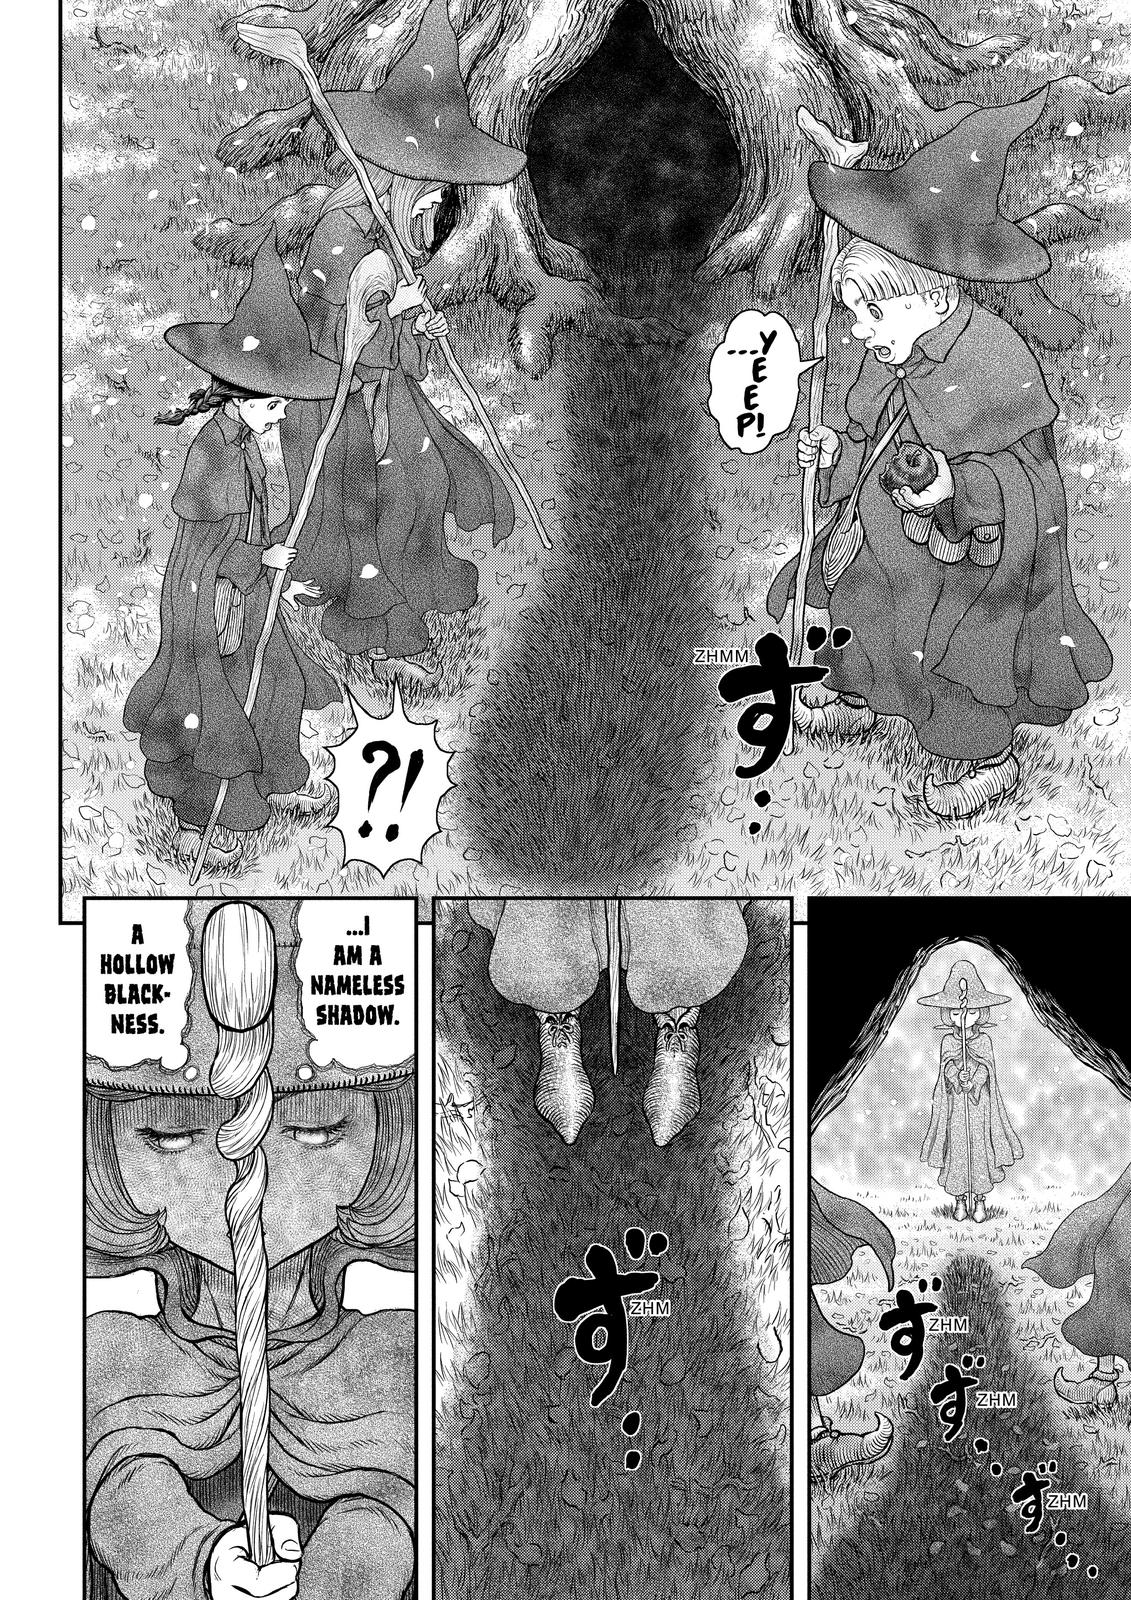 Berserk Manga Chapter 360 image 10